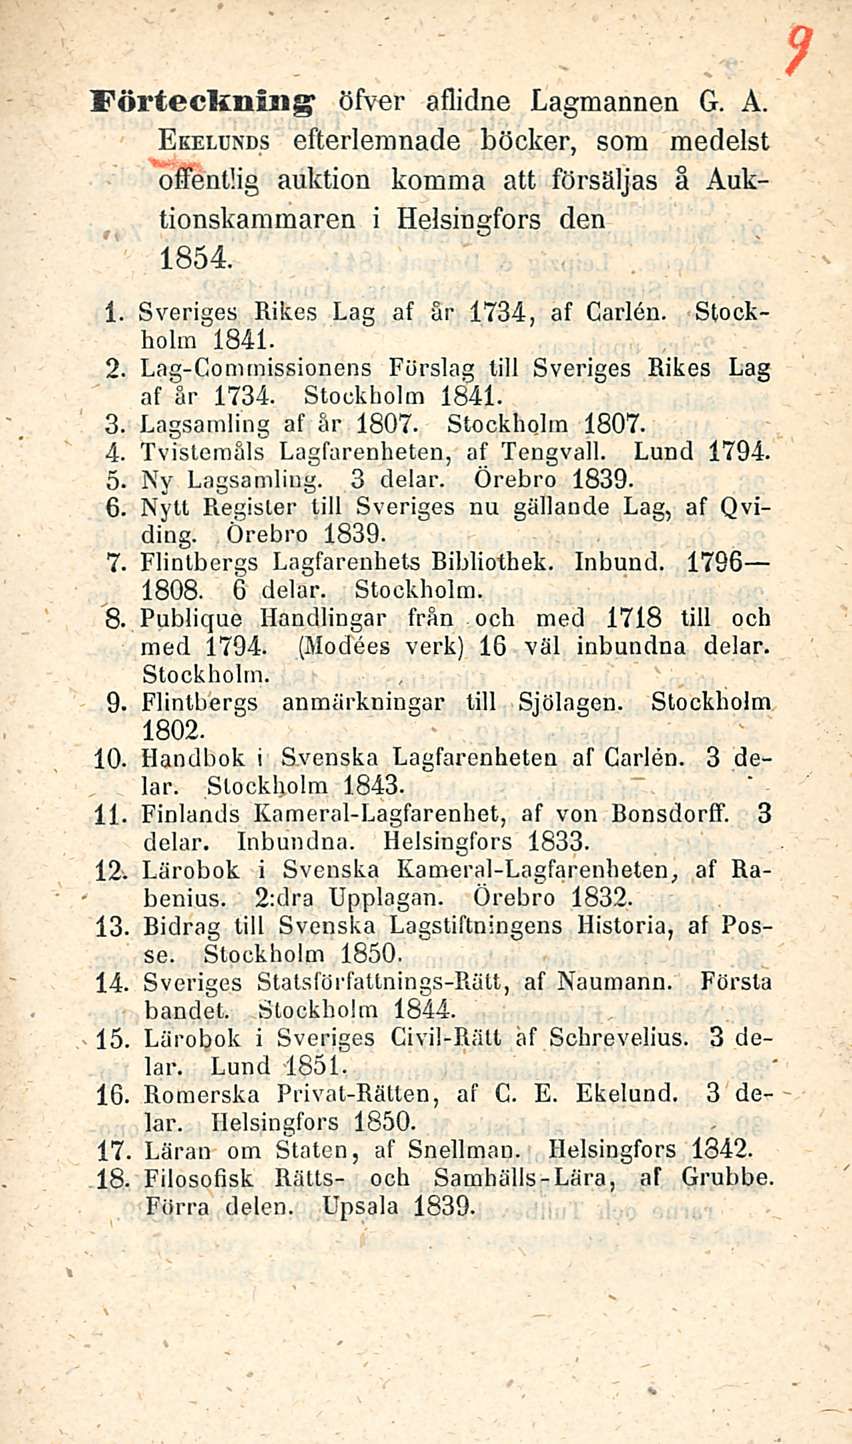 Förteckmiig öfver aflidne Lagmannen G. A. Ekeldnds efterlemnade böcker, som medelst offentlig auktion komma att försäljas å Auktionskammaren i Helsingfors den 1854. i. Sveriges Rikes Lag af år 1734, af Carlen.